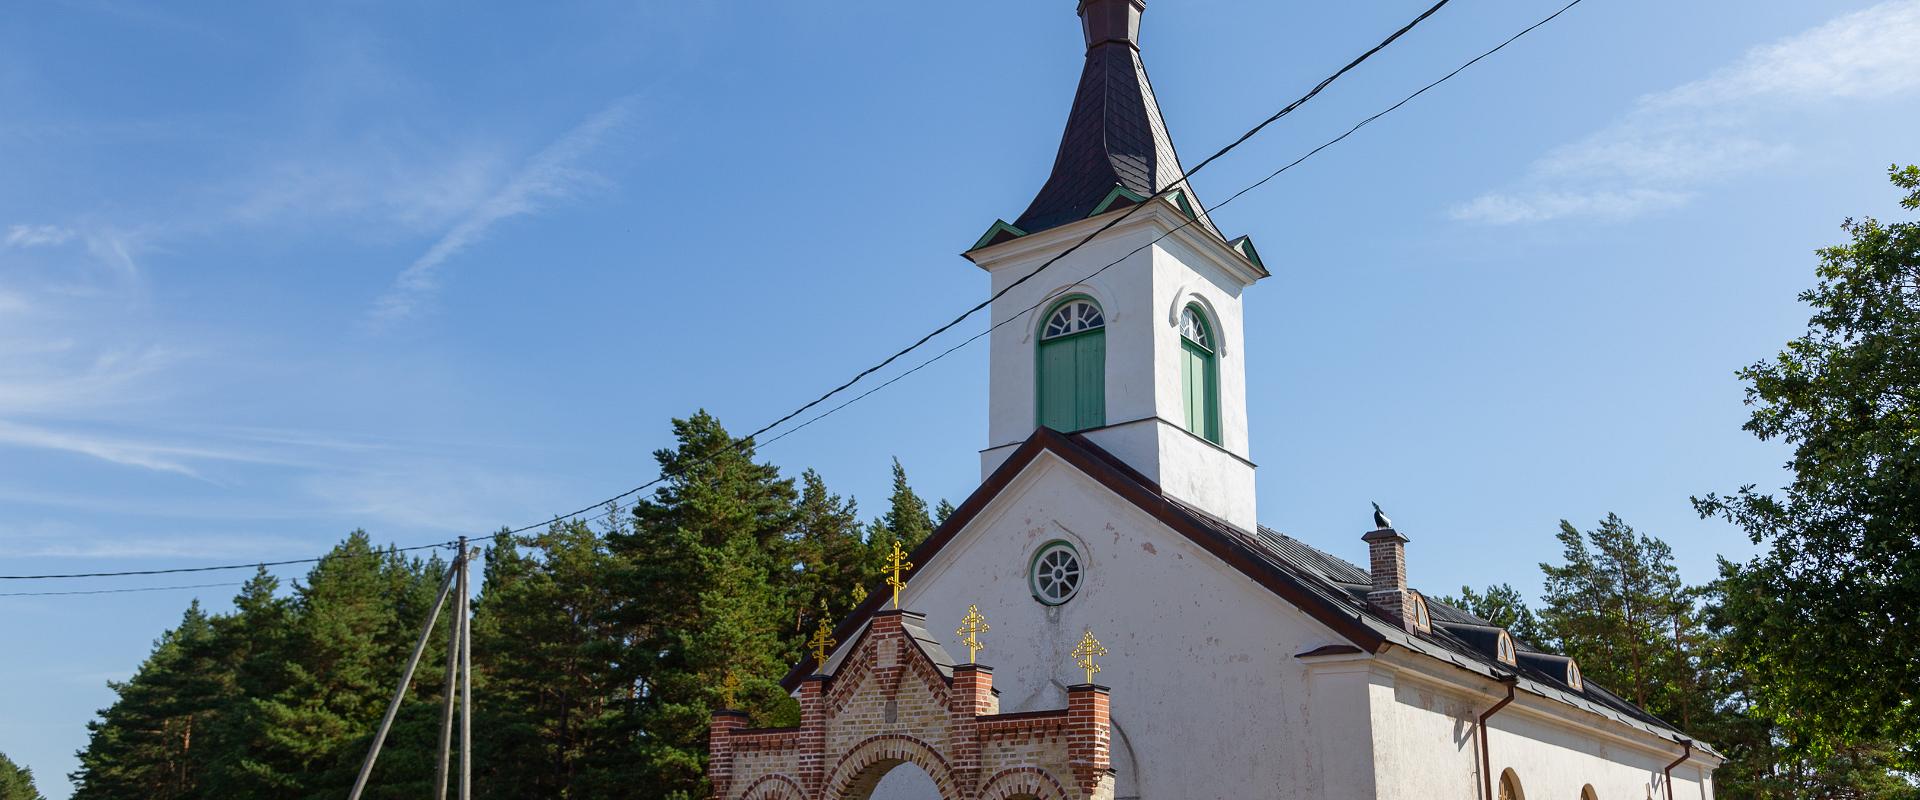 Kihnun Pyhän Nikolain kirkko